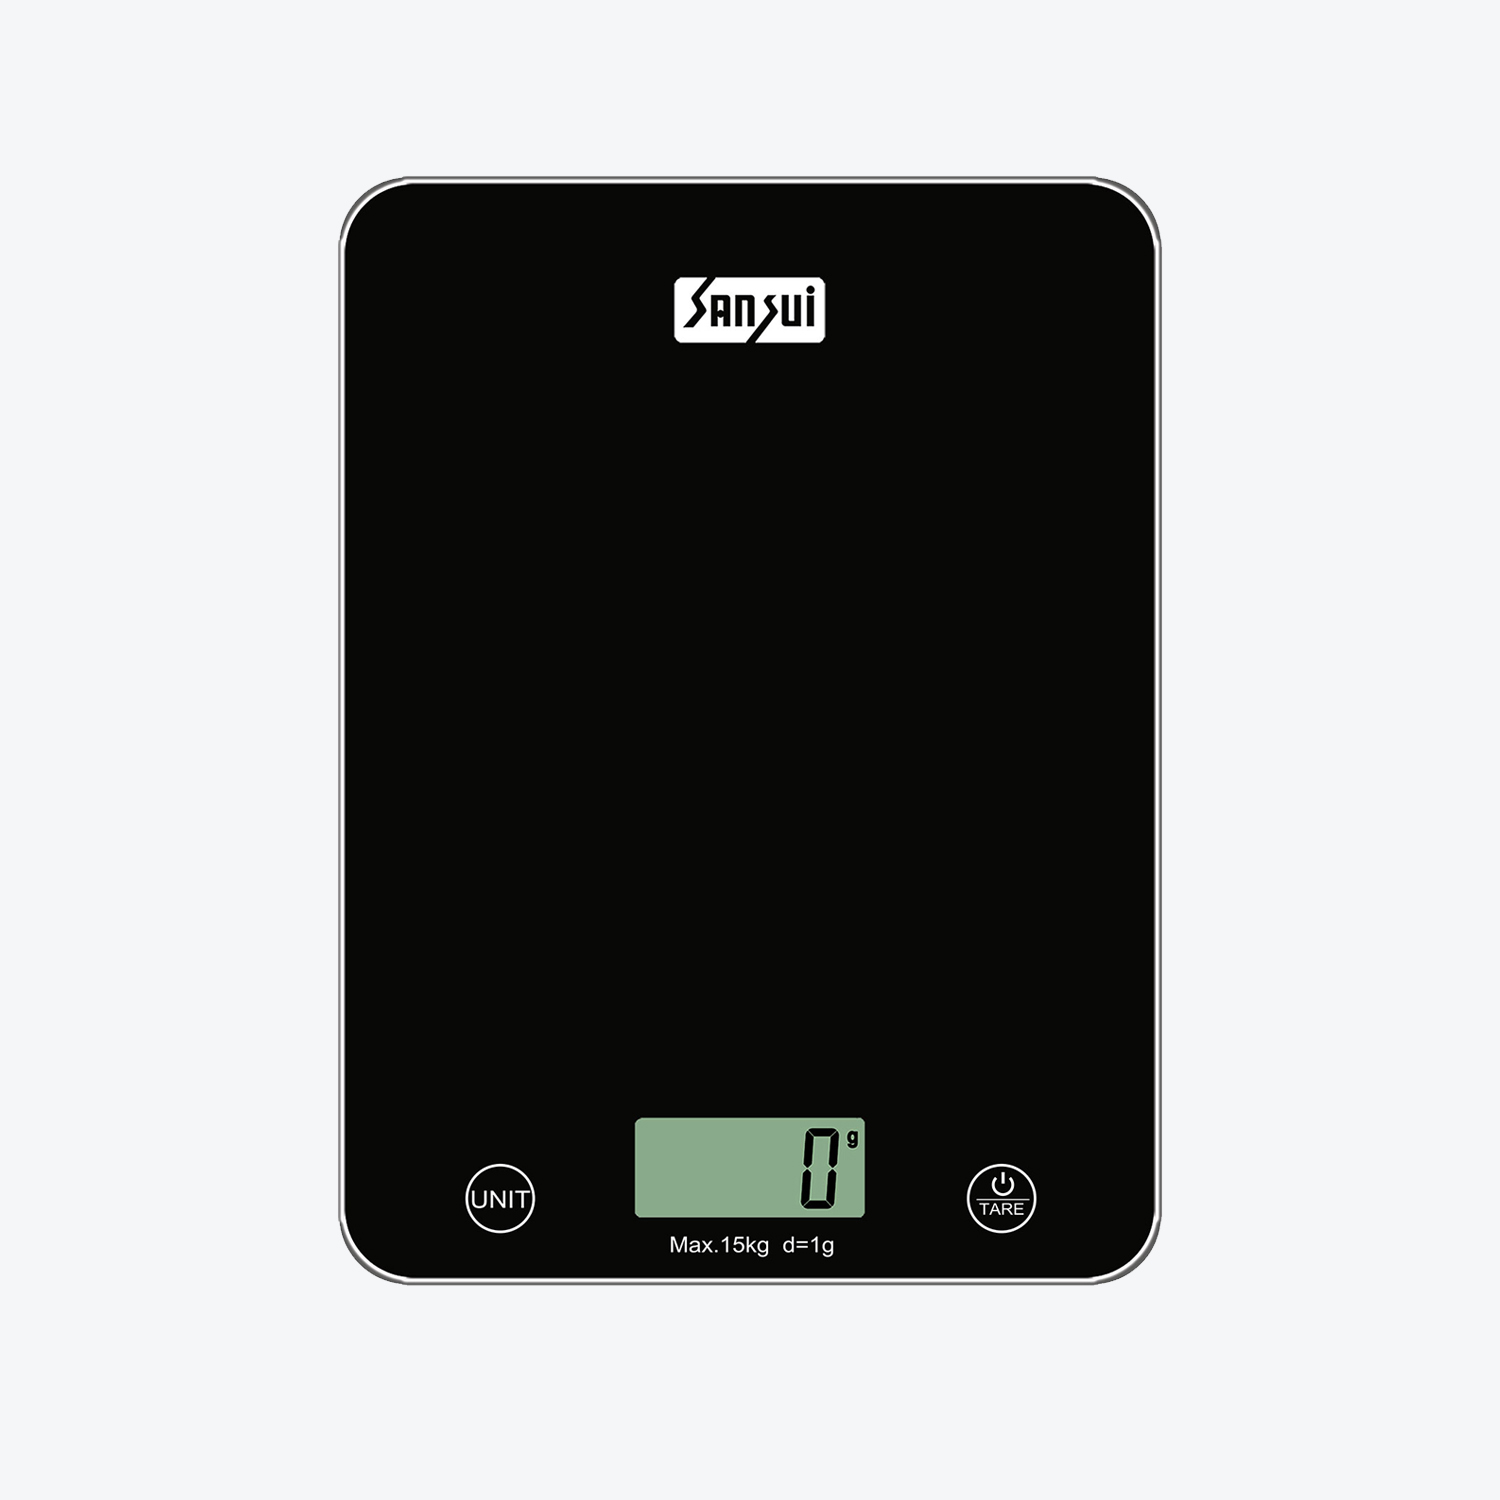 Sansui Kitchen Scale Flat, digital kitchen scale, weighing machine